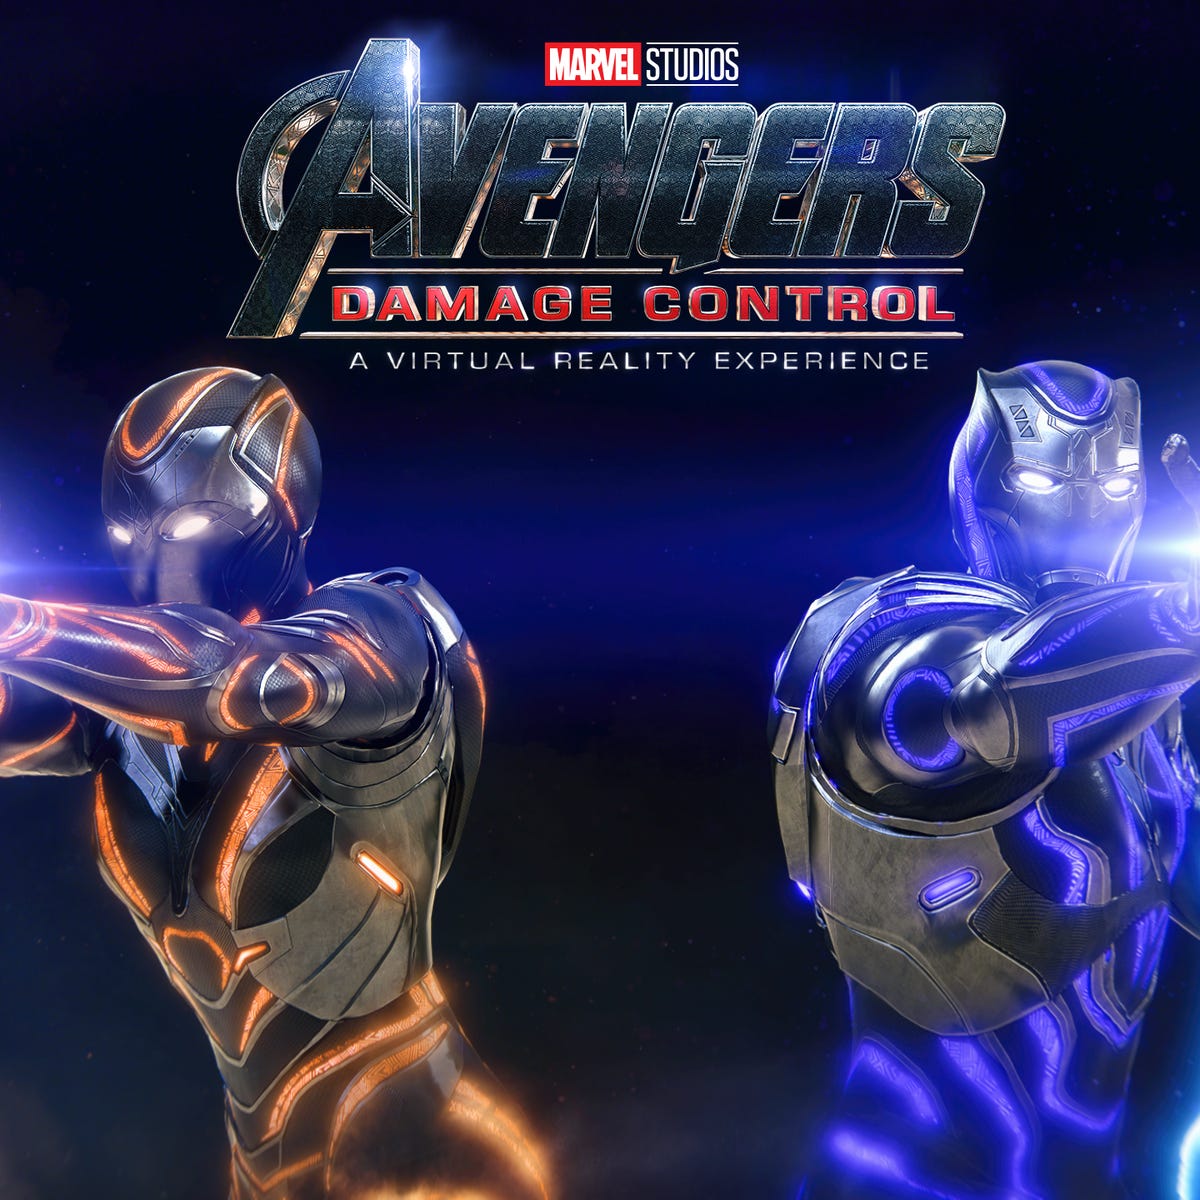 Precursor pasaporte perdonado Avengers: Damage Control is a VR dream for fans of the MCU - CNET